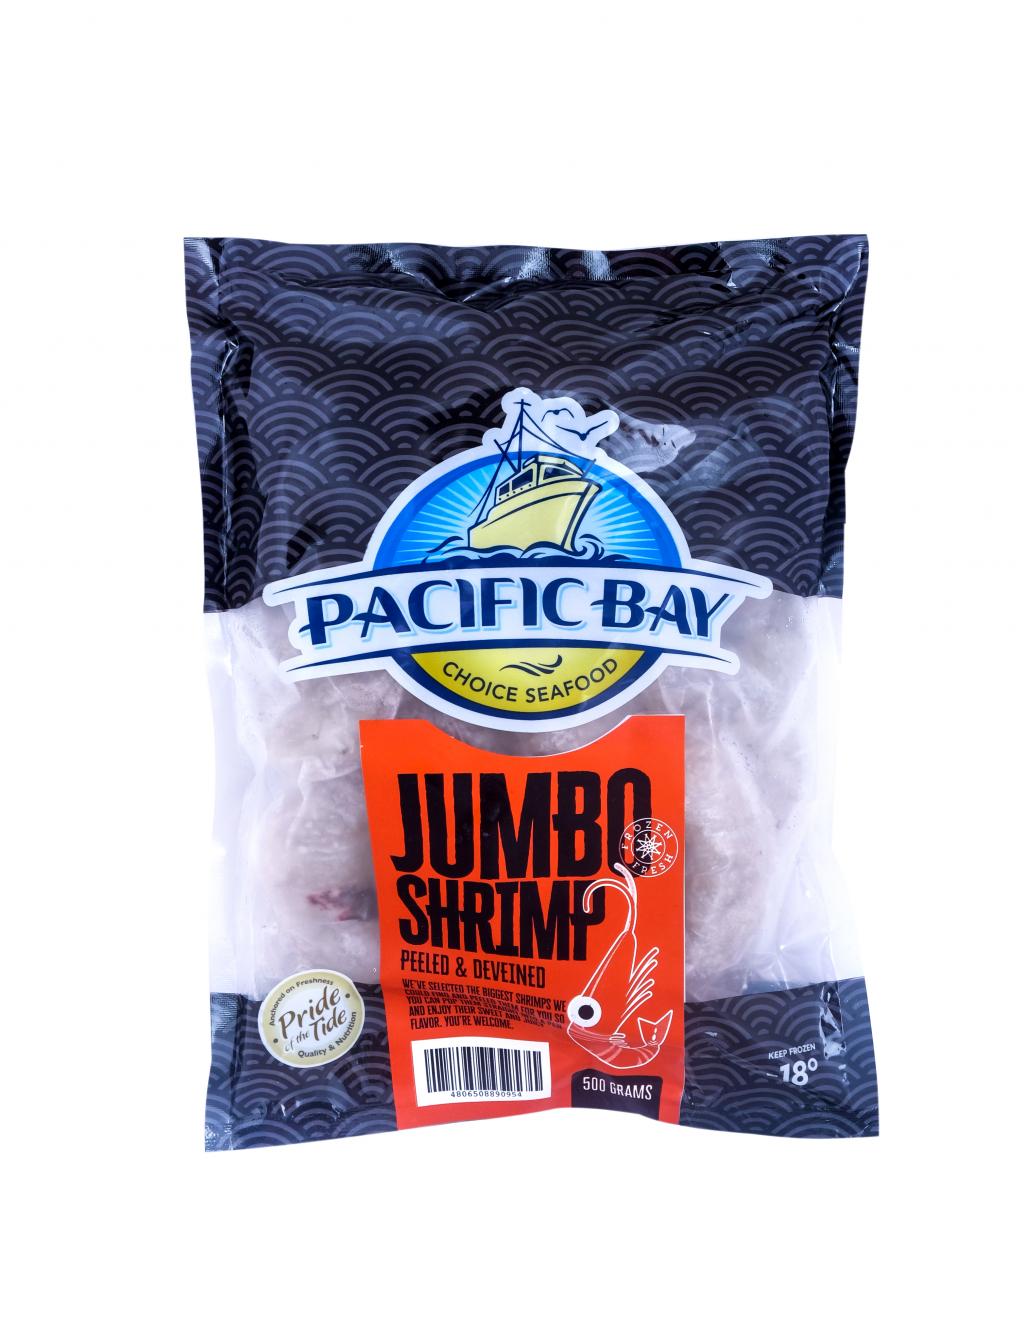 Jumbo Shrimp Peeled & Deveined